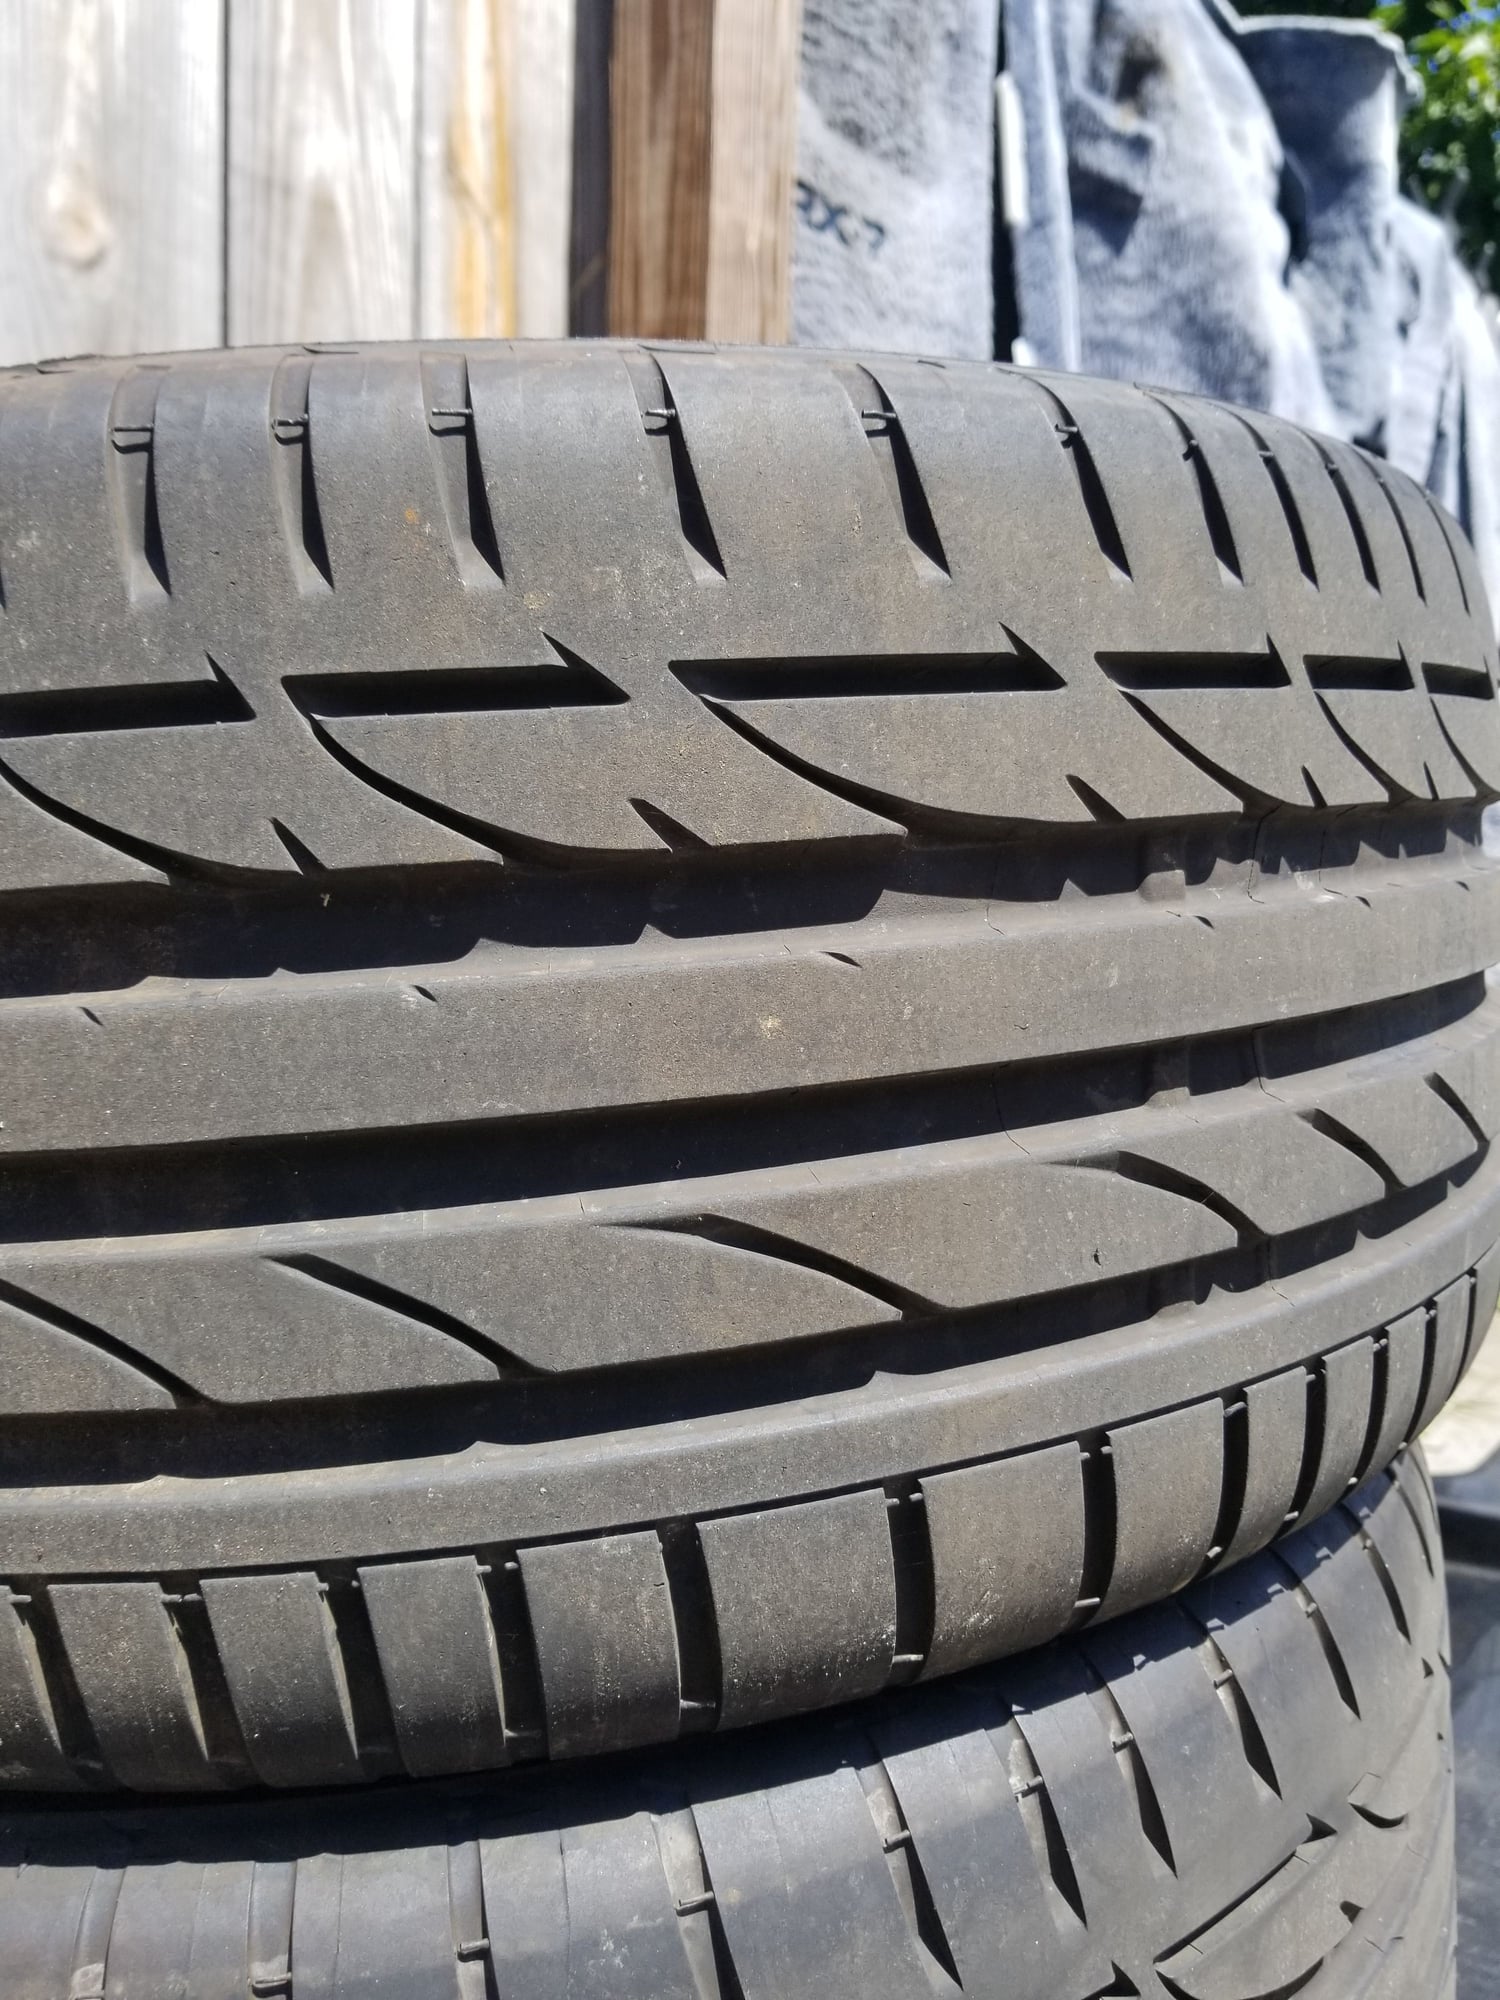 Wheels and Tires/Axles - SSR integral wheels 17x8F 18x9R w/ new Bridgestone Potenza S04 tires - Used - Morristown, TN 37814, United States